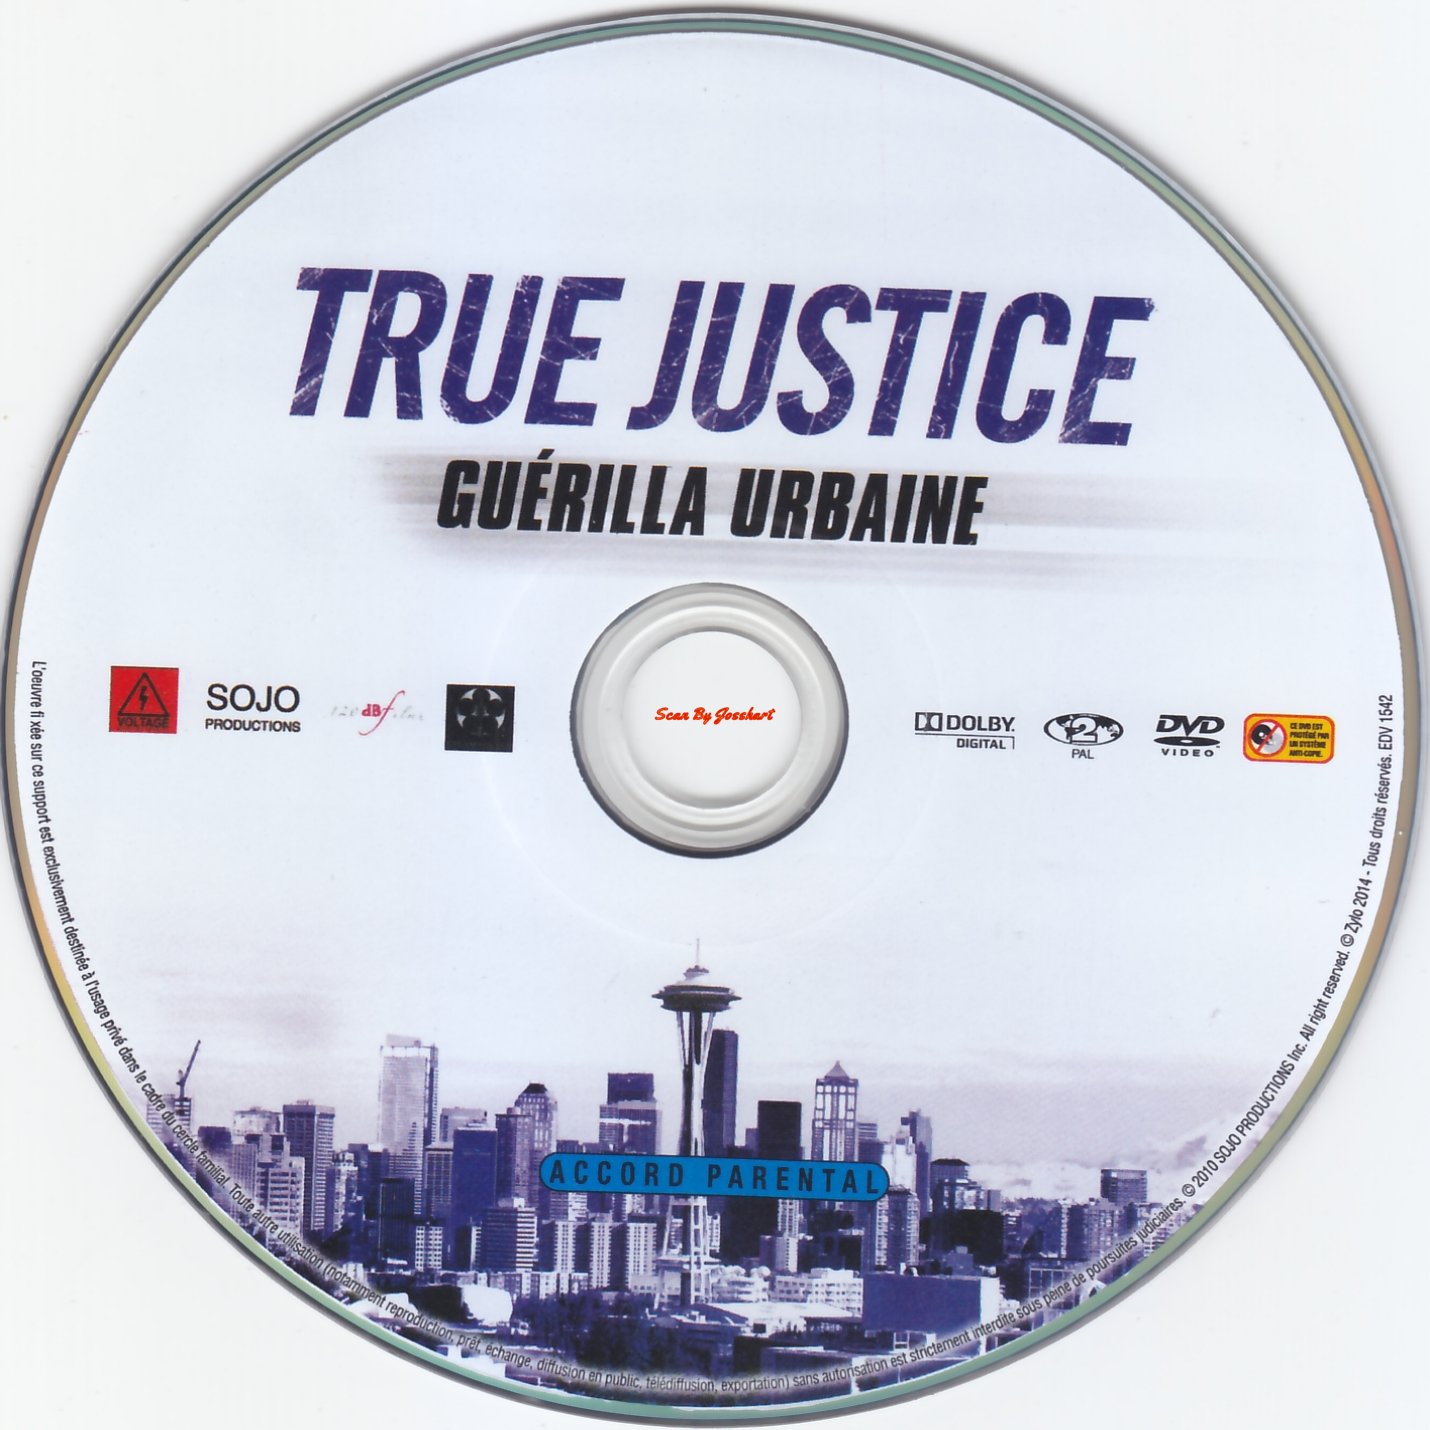 True Justice 6 Guerilla Urbaine